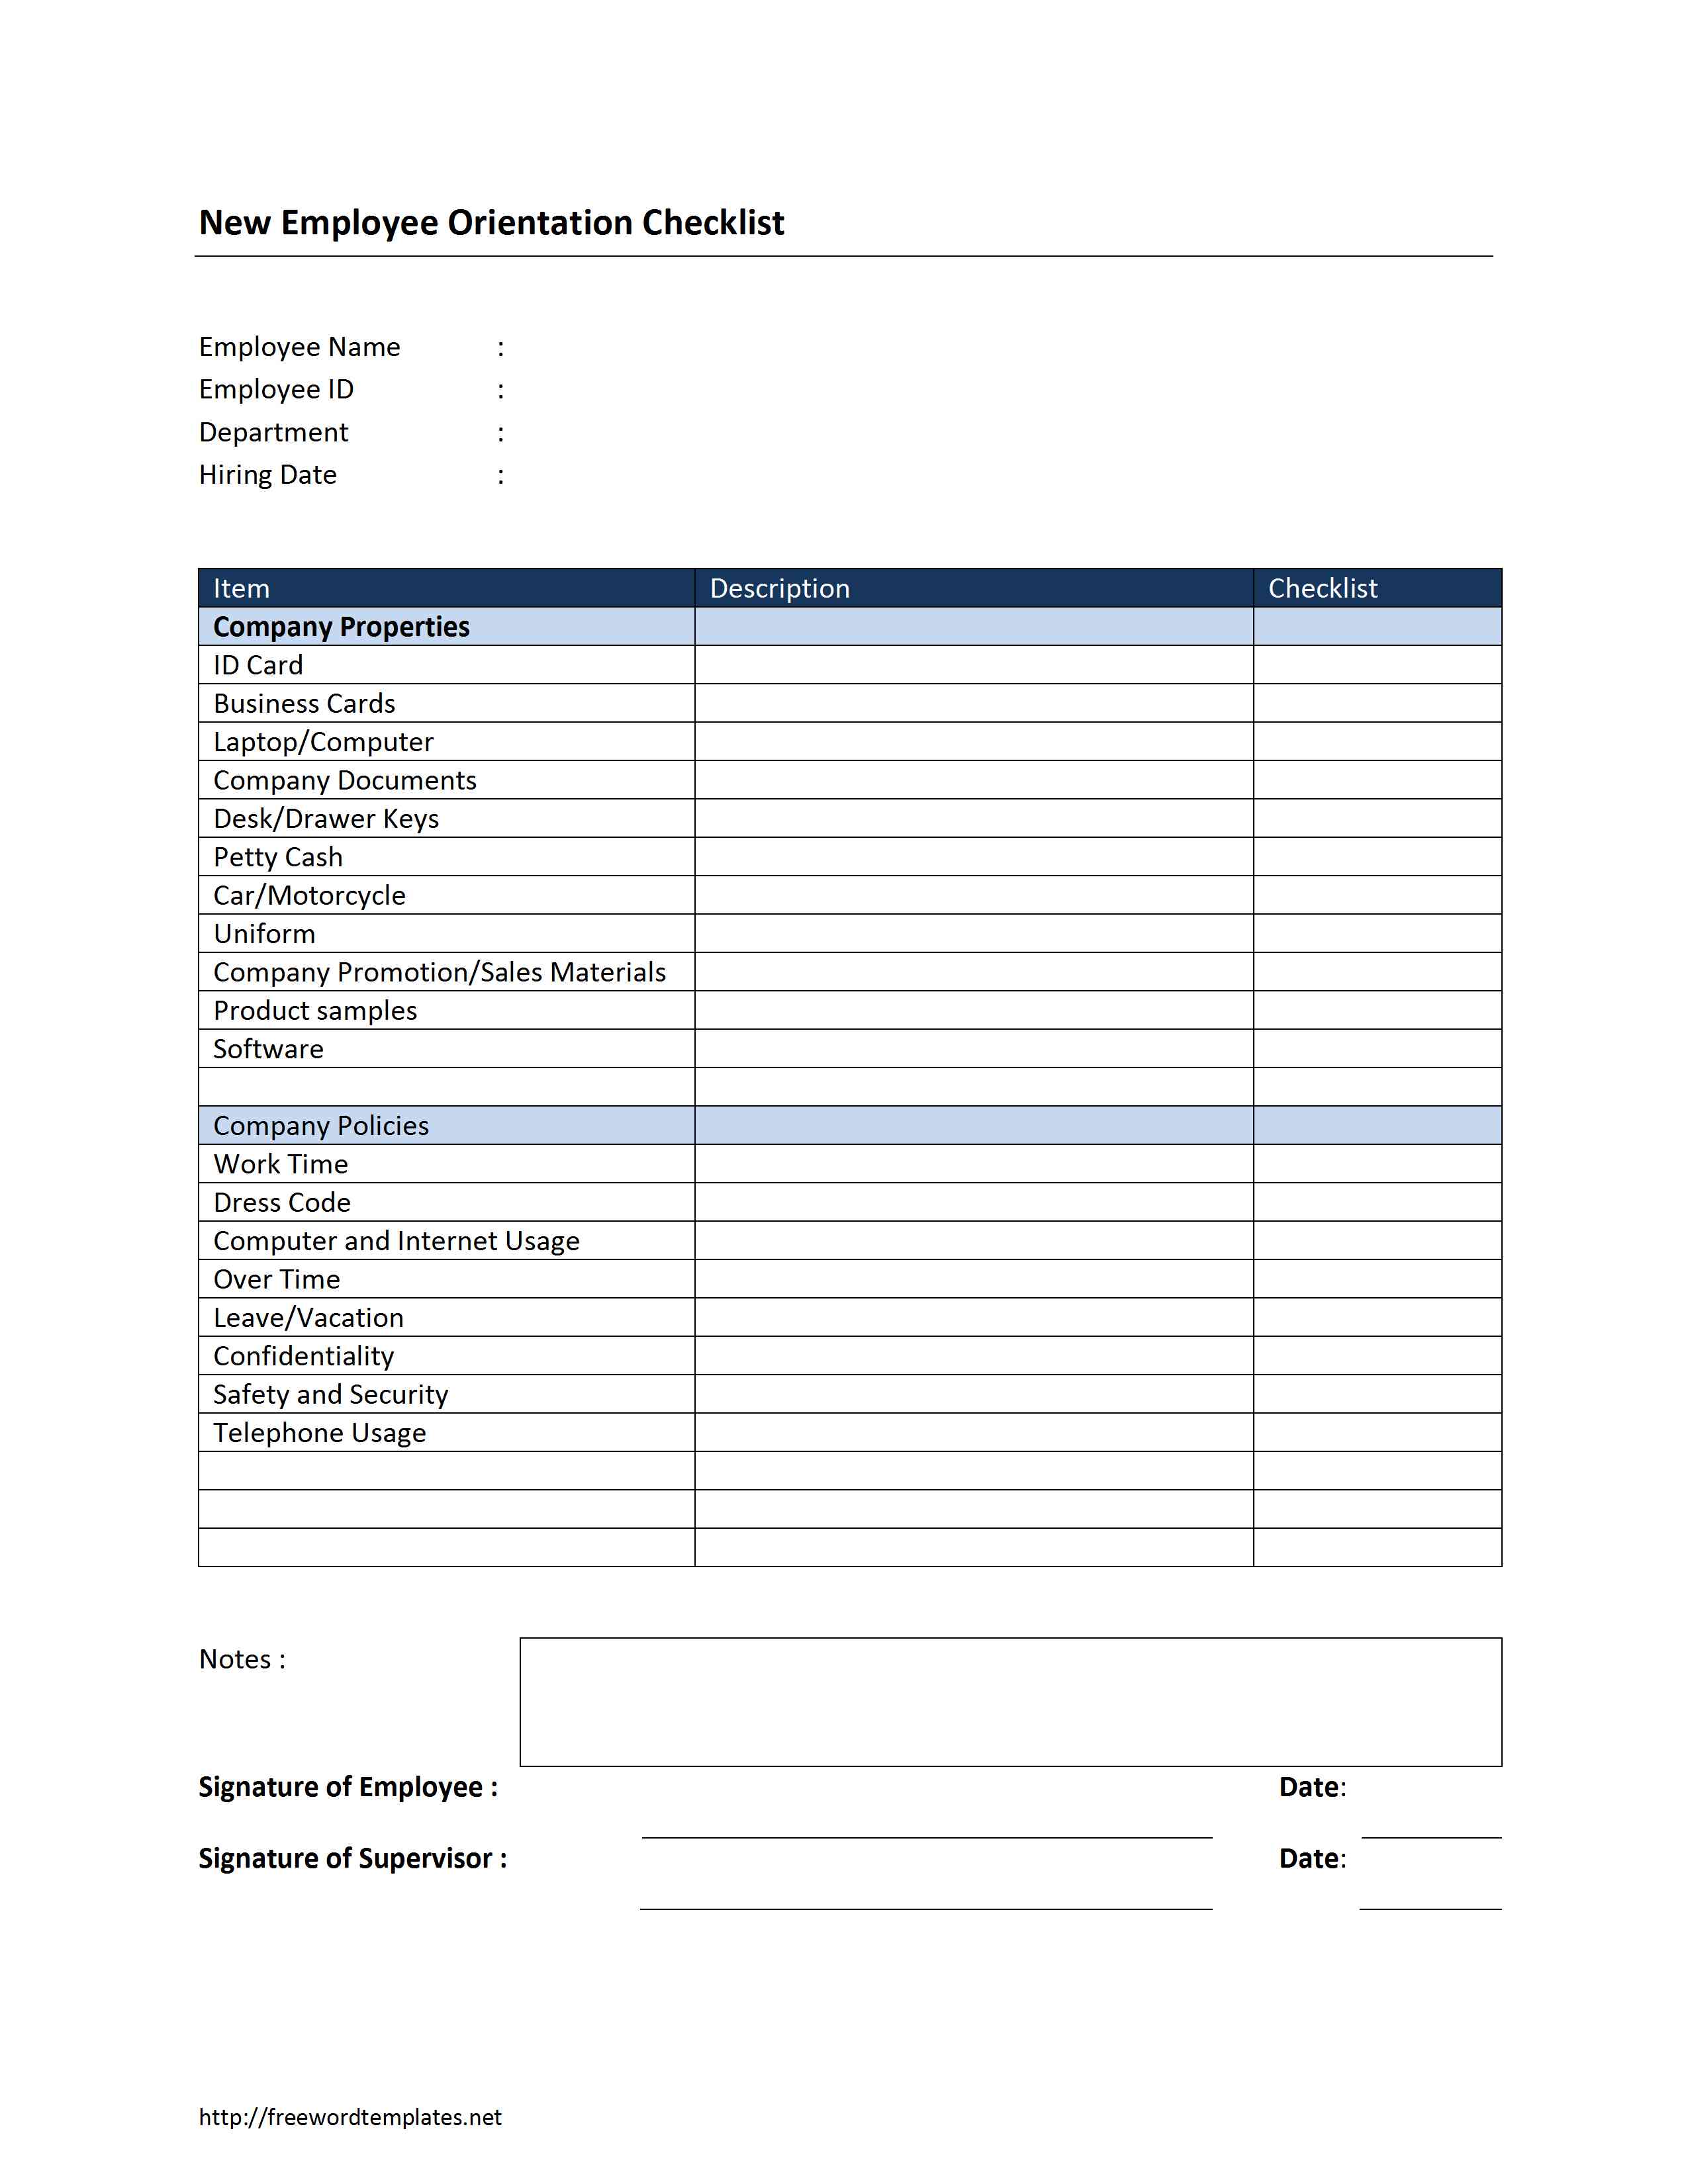 Checklist Template Docx New Employee Orientation Checklist